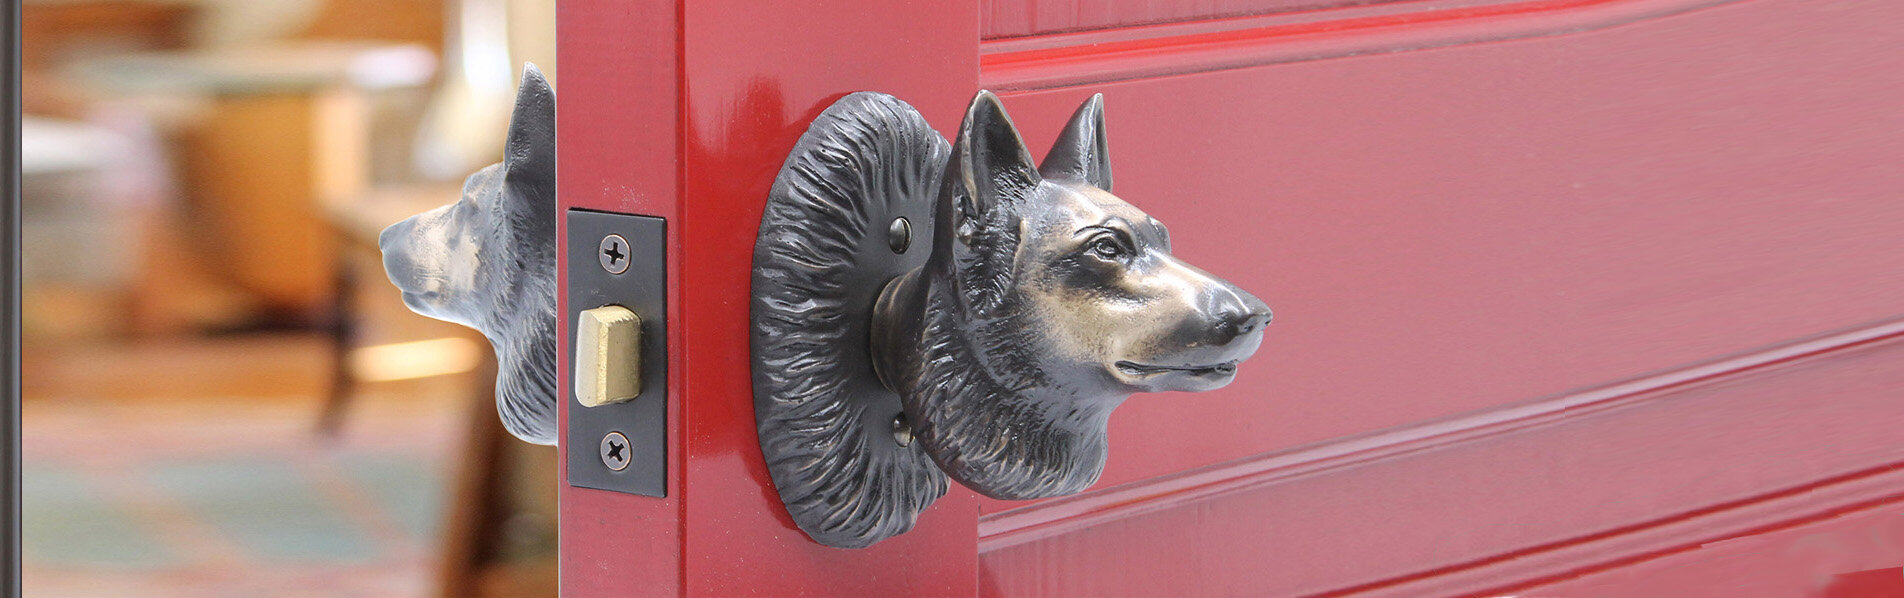 German shepard door knob set.jpg